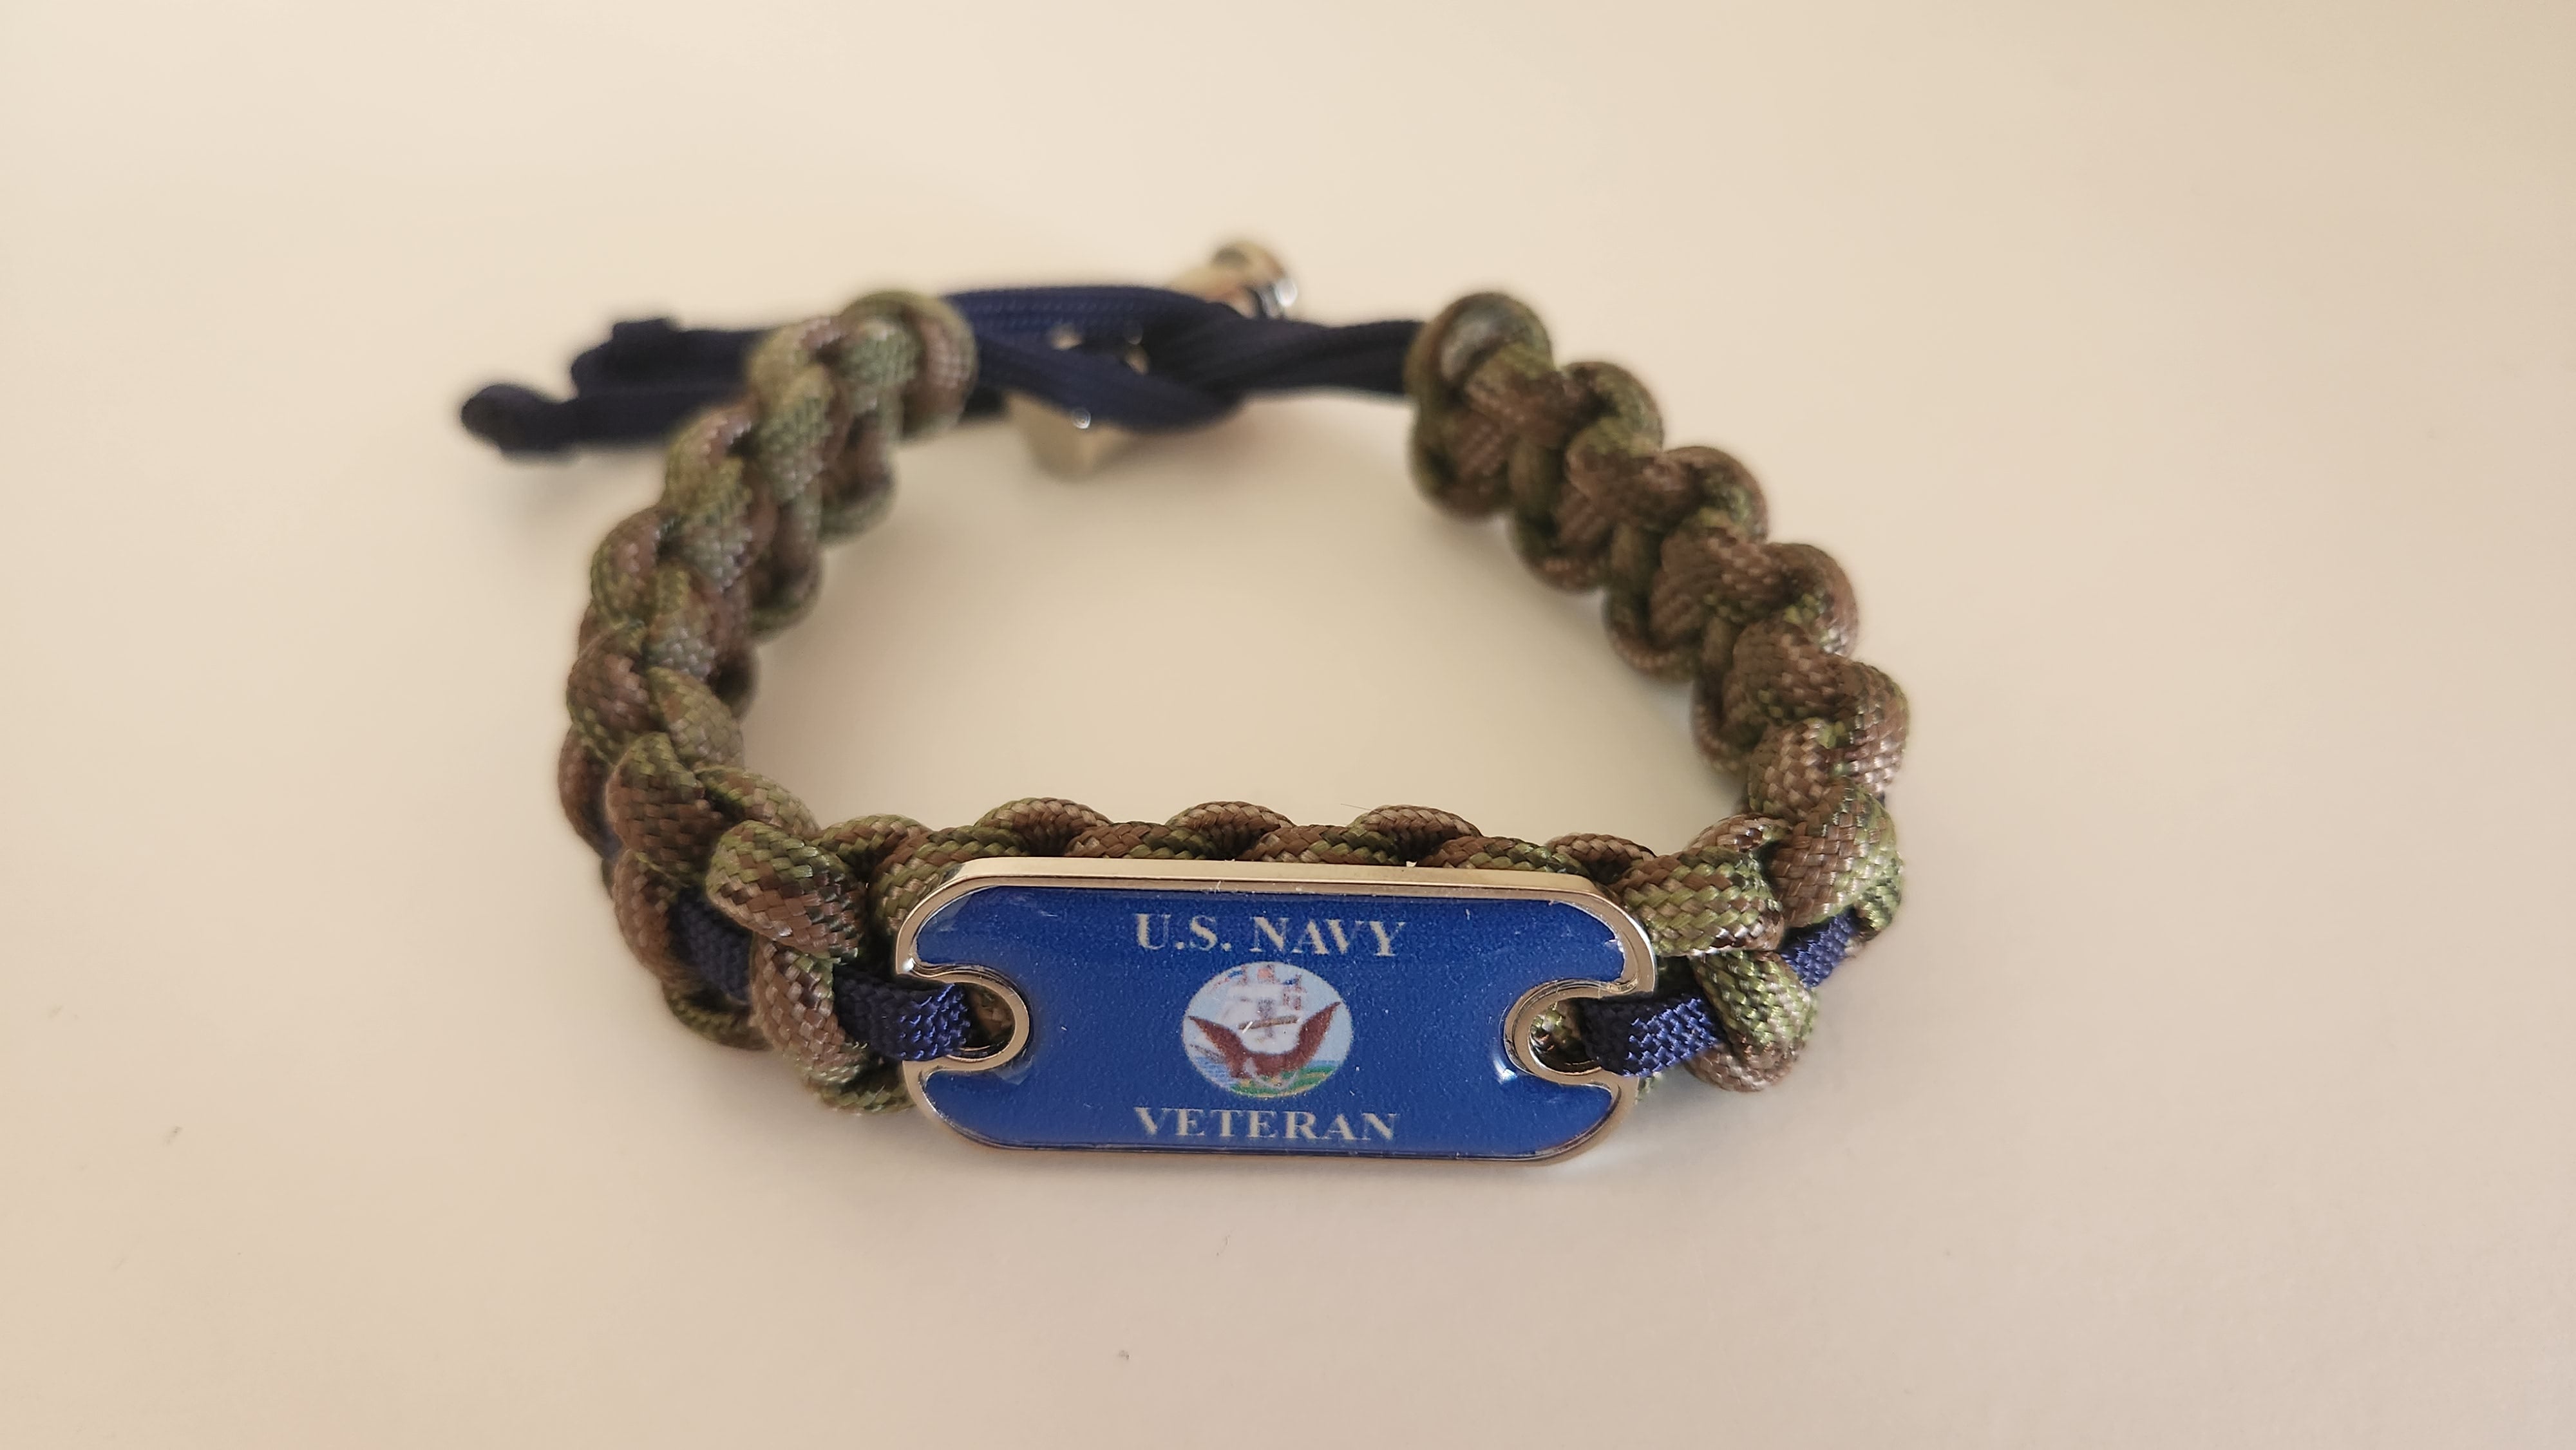 US Navy Veteran Dog Tag Paracord Bracelet - Handmade By Heroes